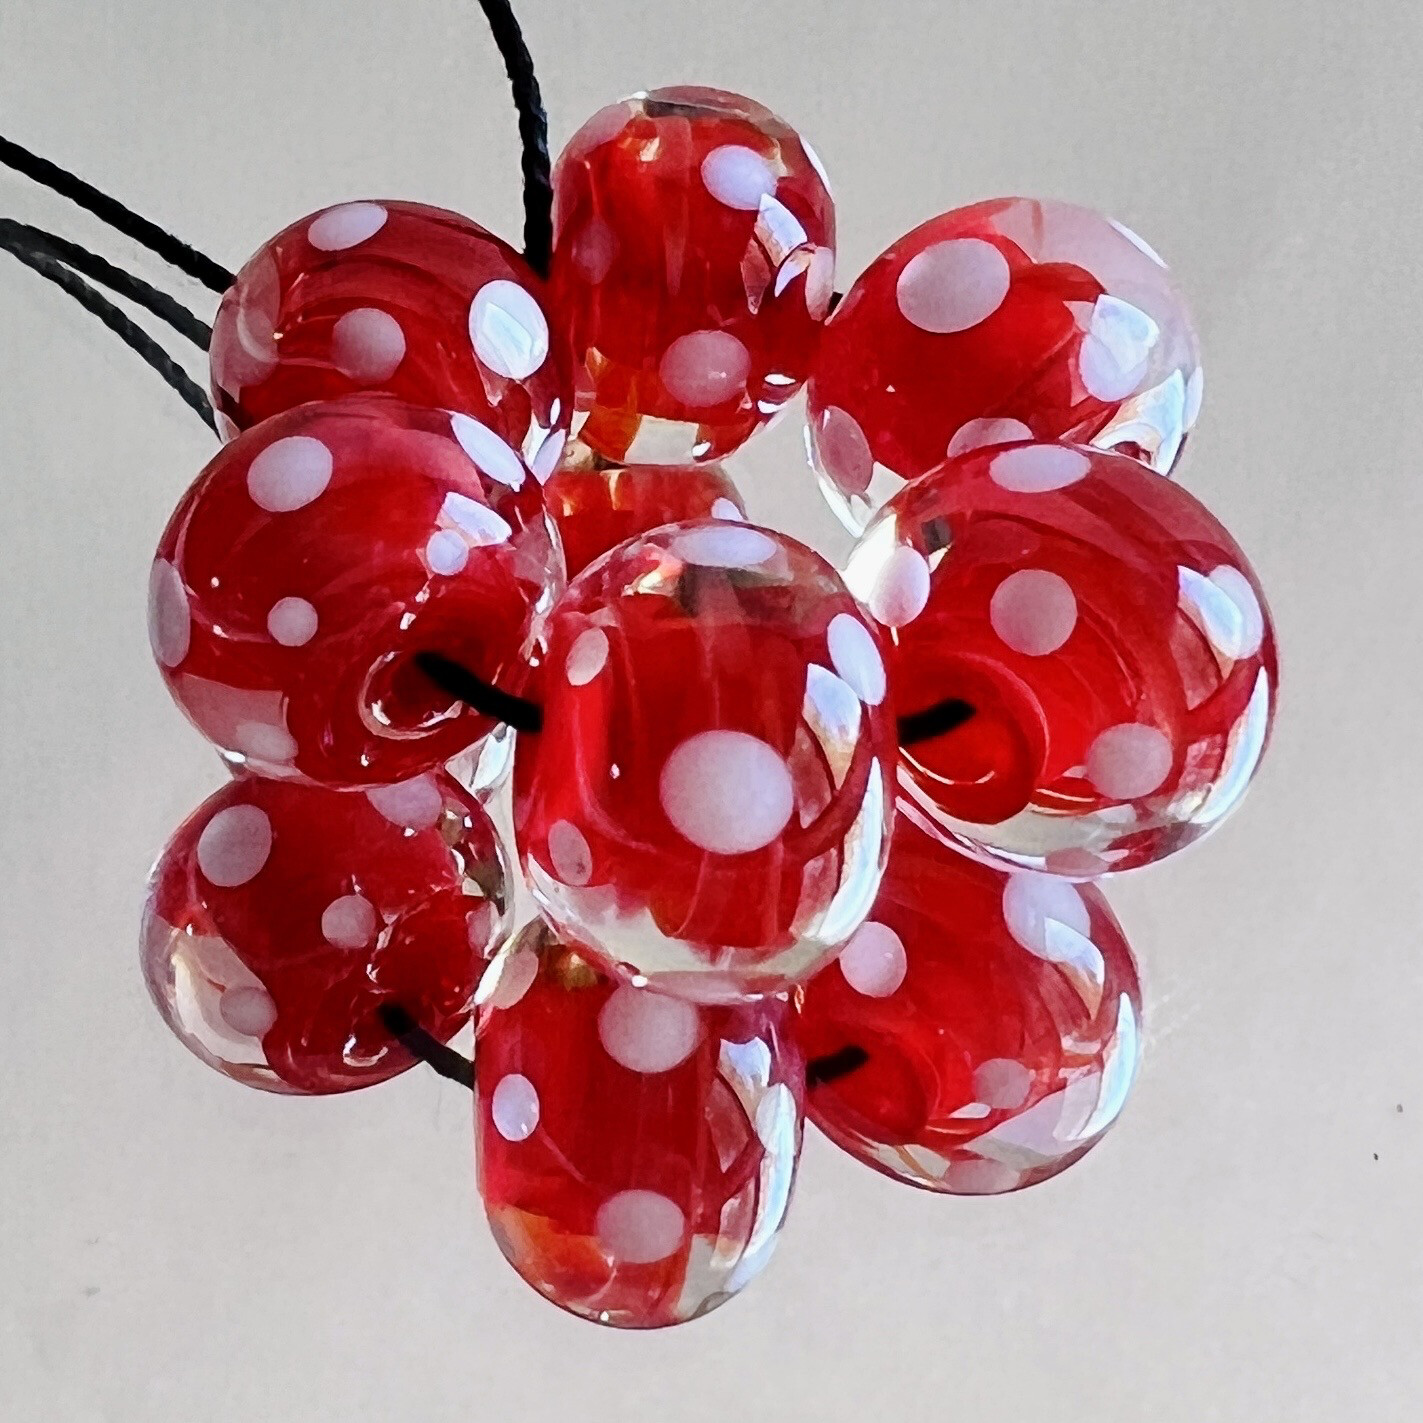 Red Hot White Dots Handmade Lampwork Beads